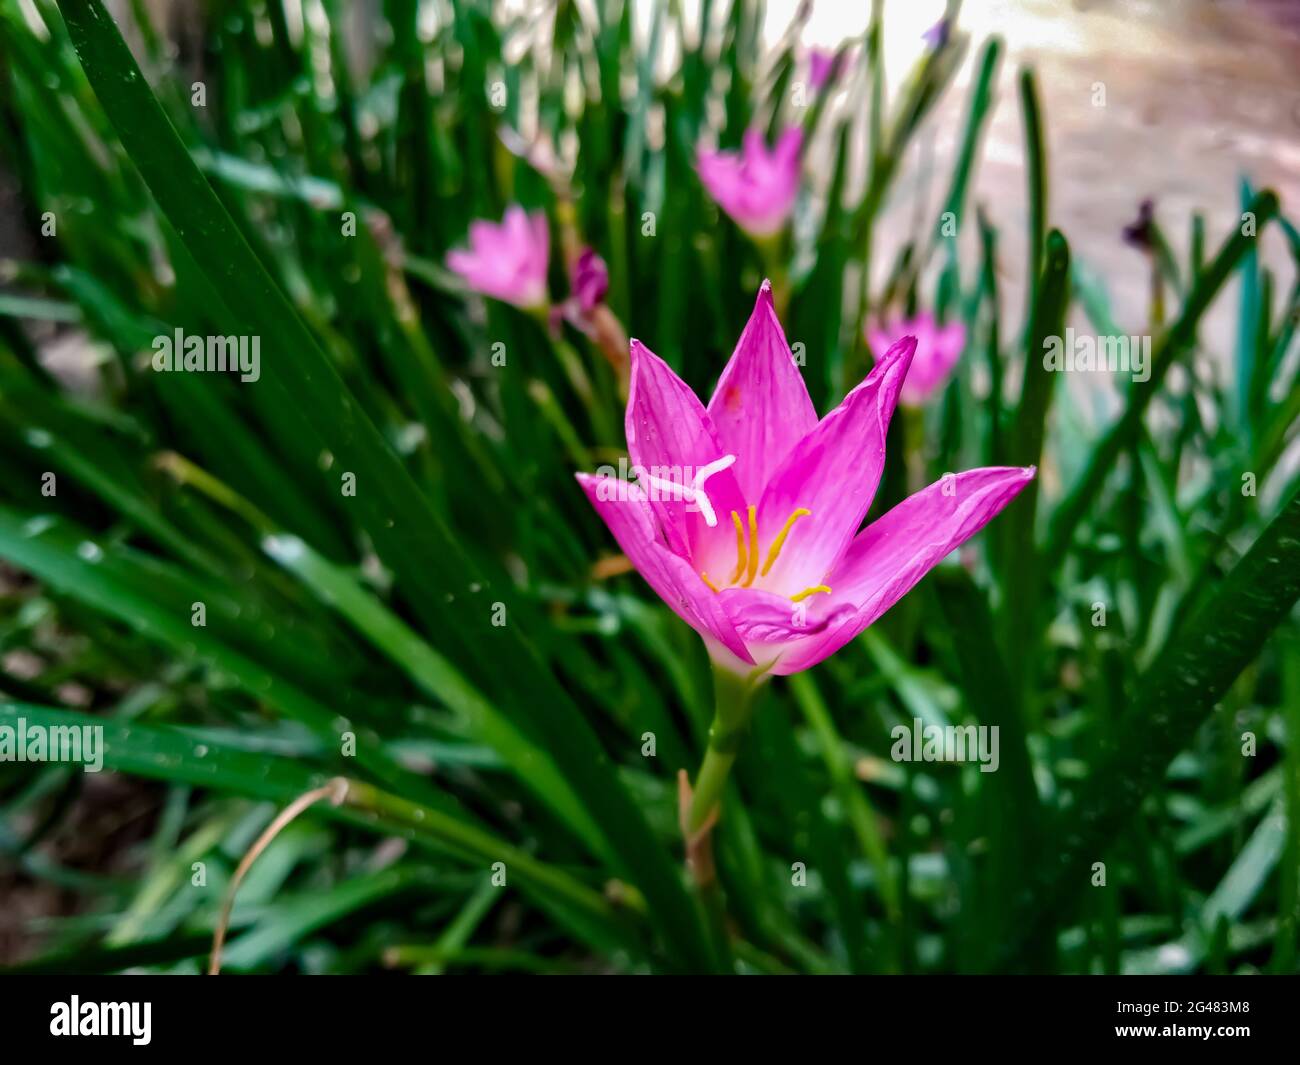 Closeup of a Cuban zephyrlily growing in the garden Stock Photo